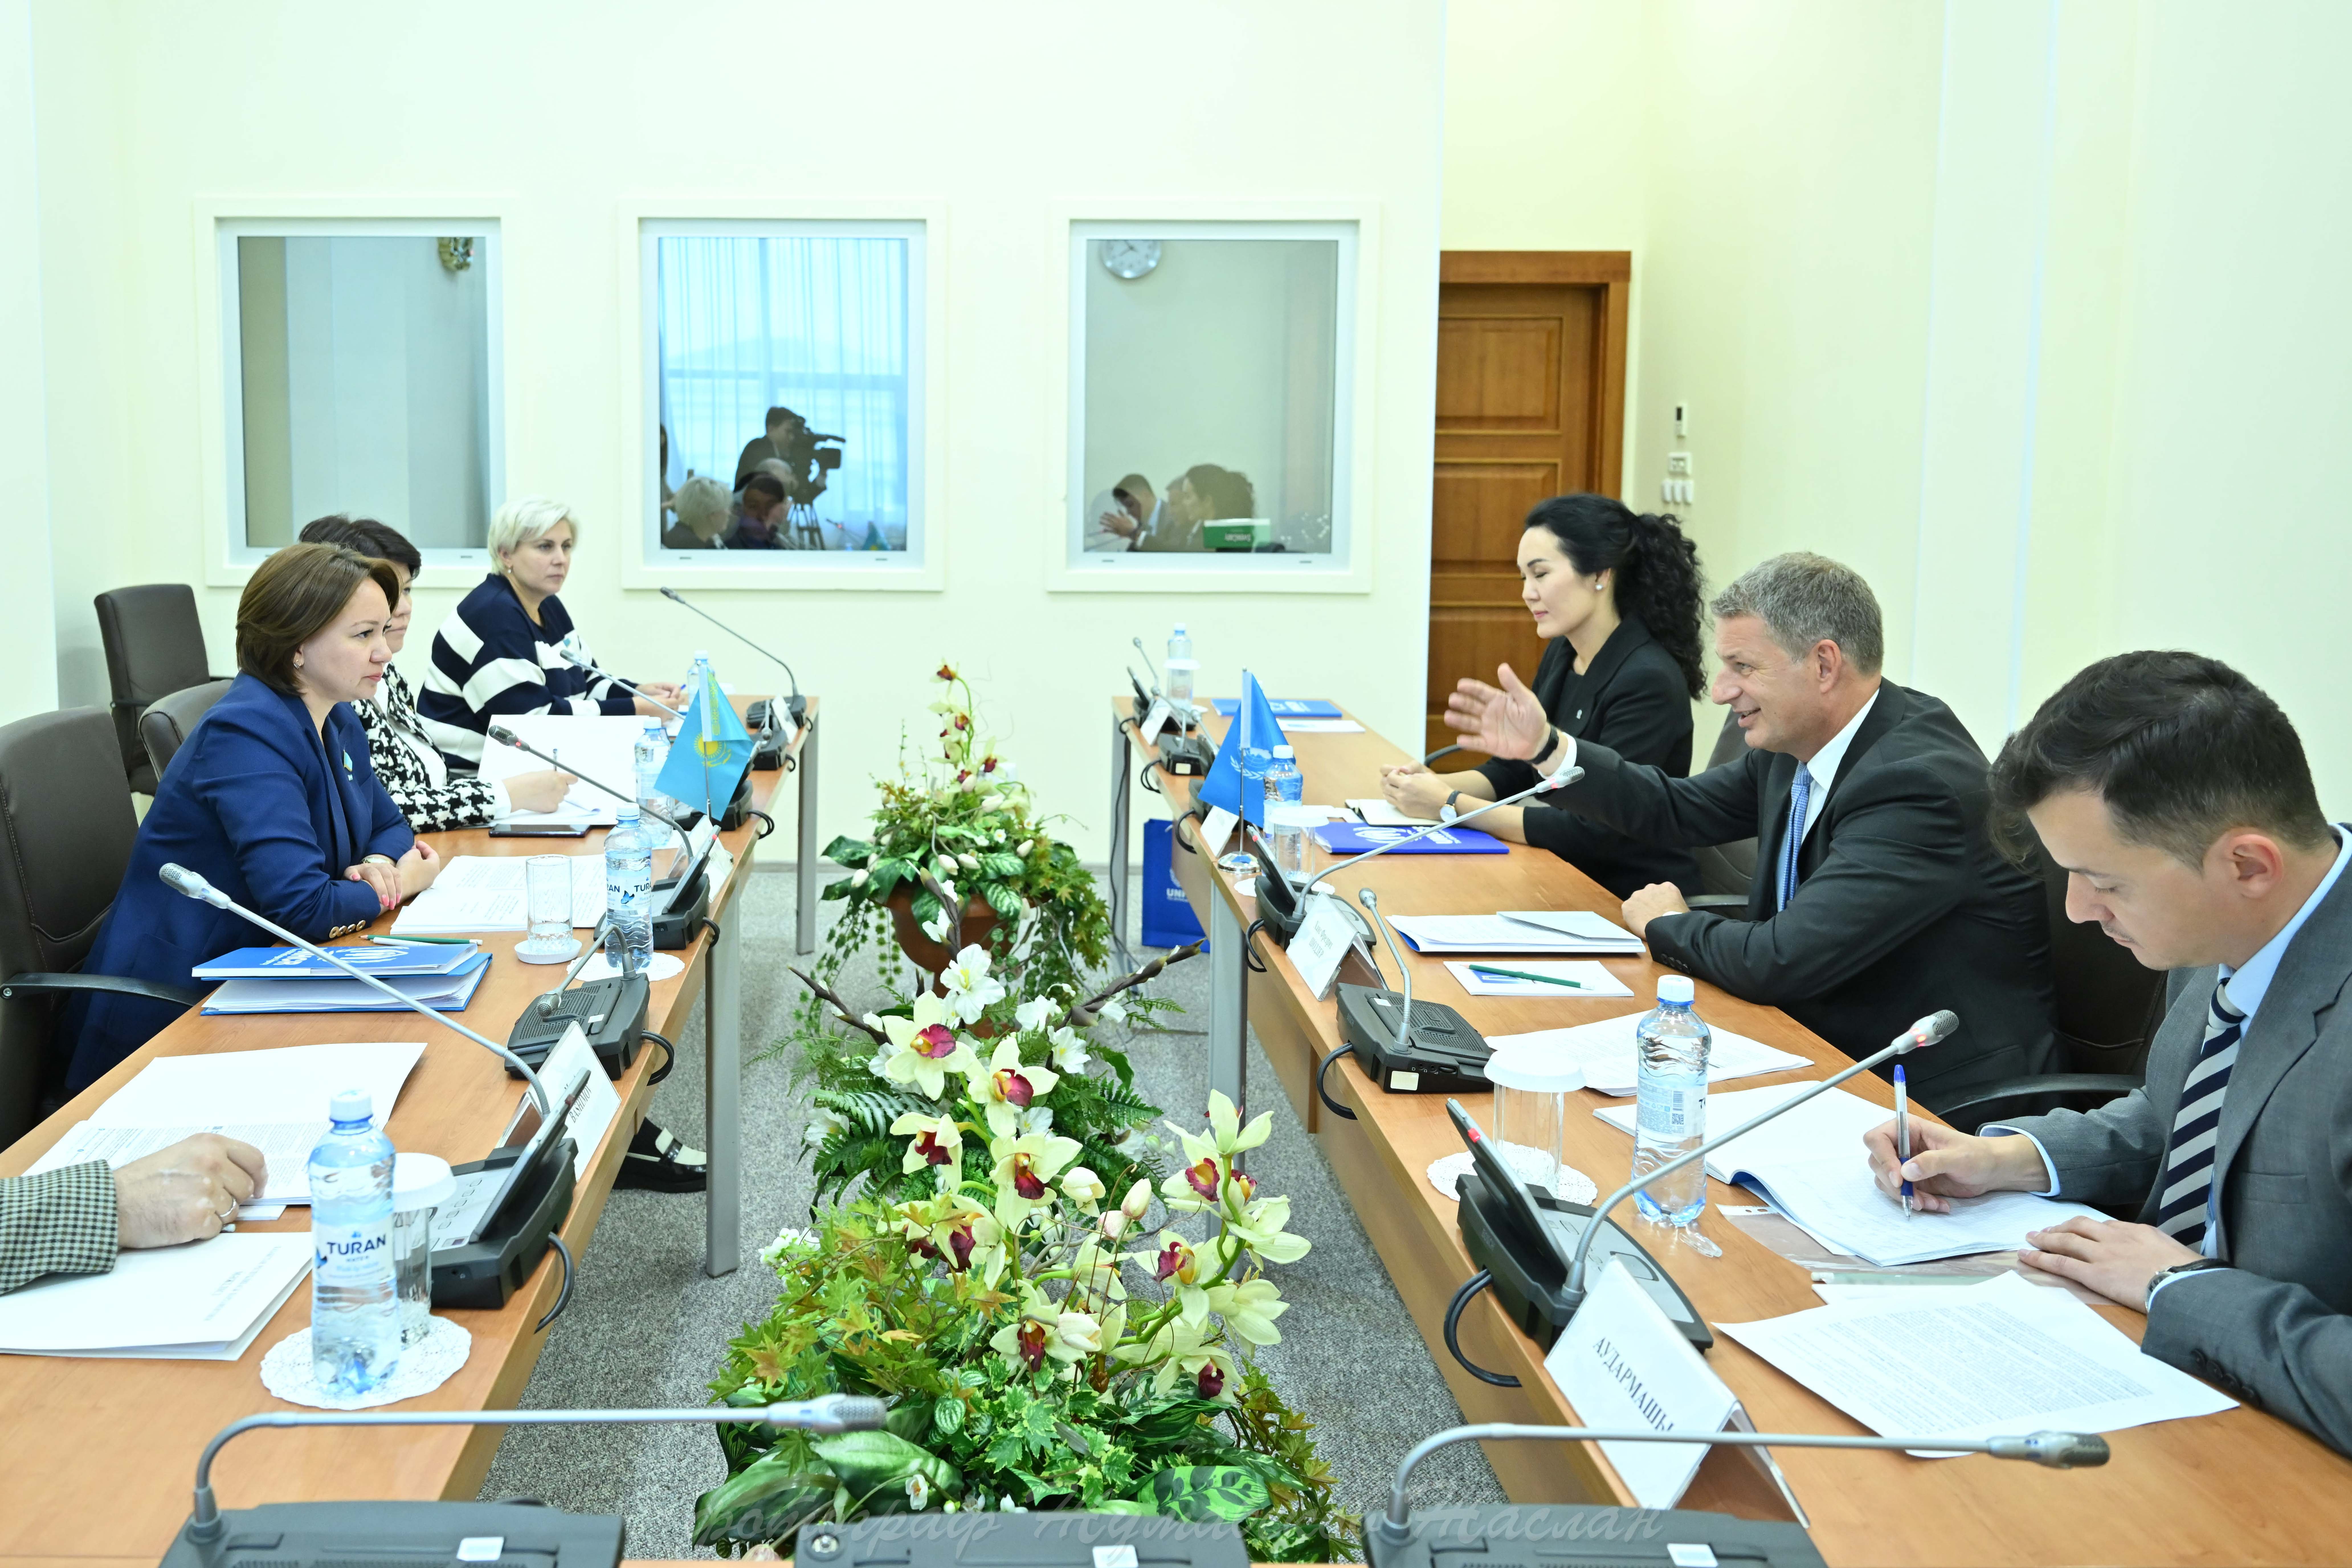 Сегодня состоялась встреча с Представителем Управления Верховного комиссара ООН по делам беженцев по Центральной Азии Х.Шоддером